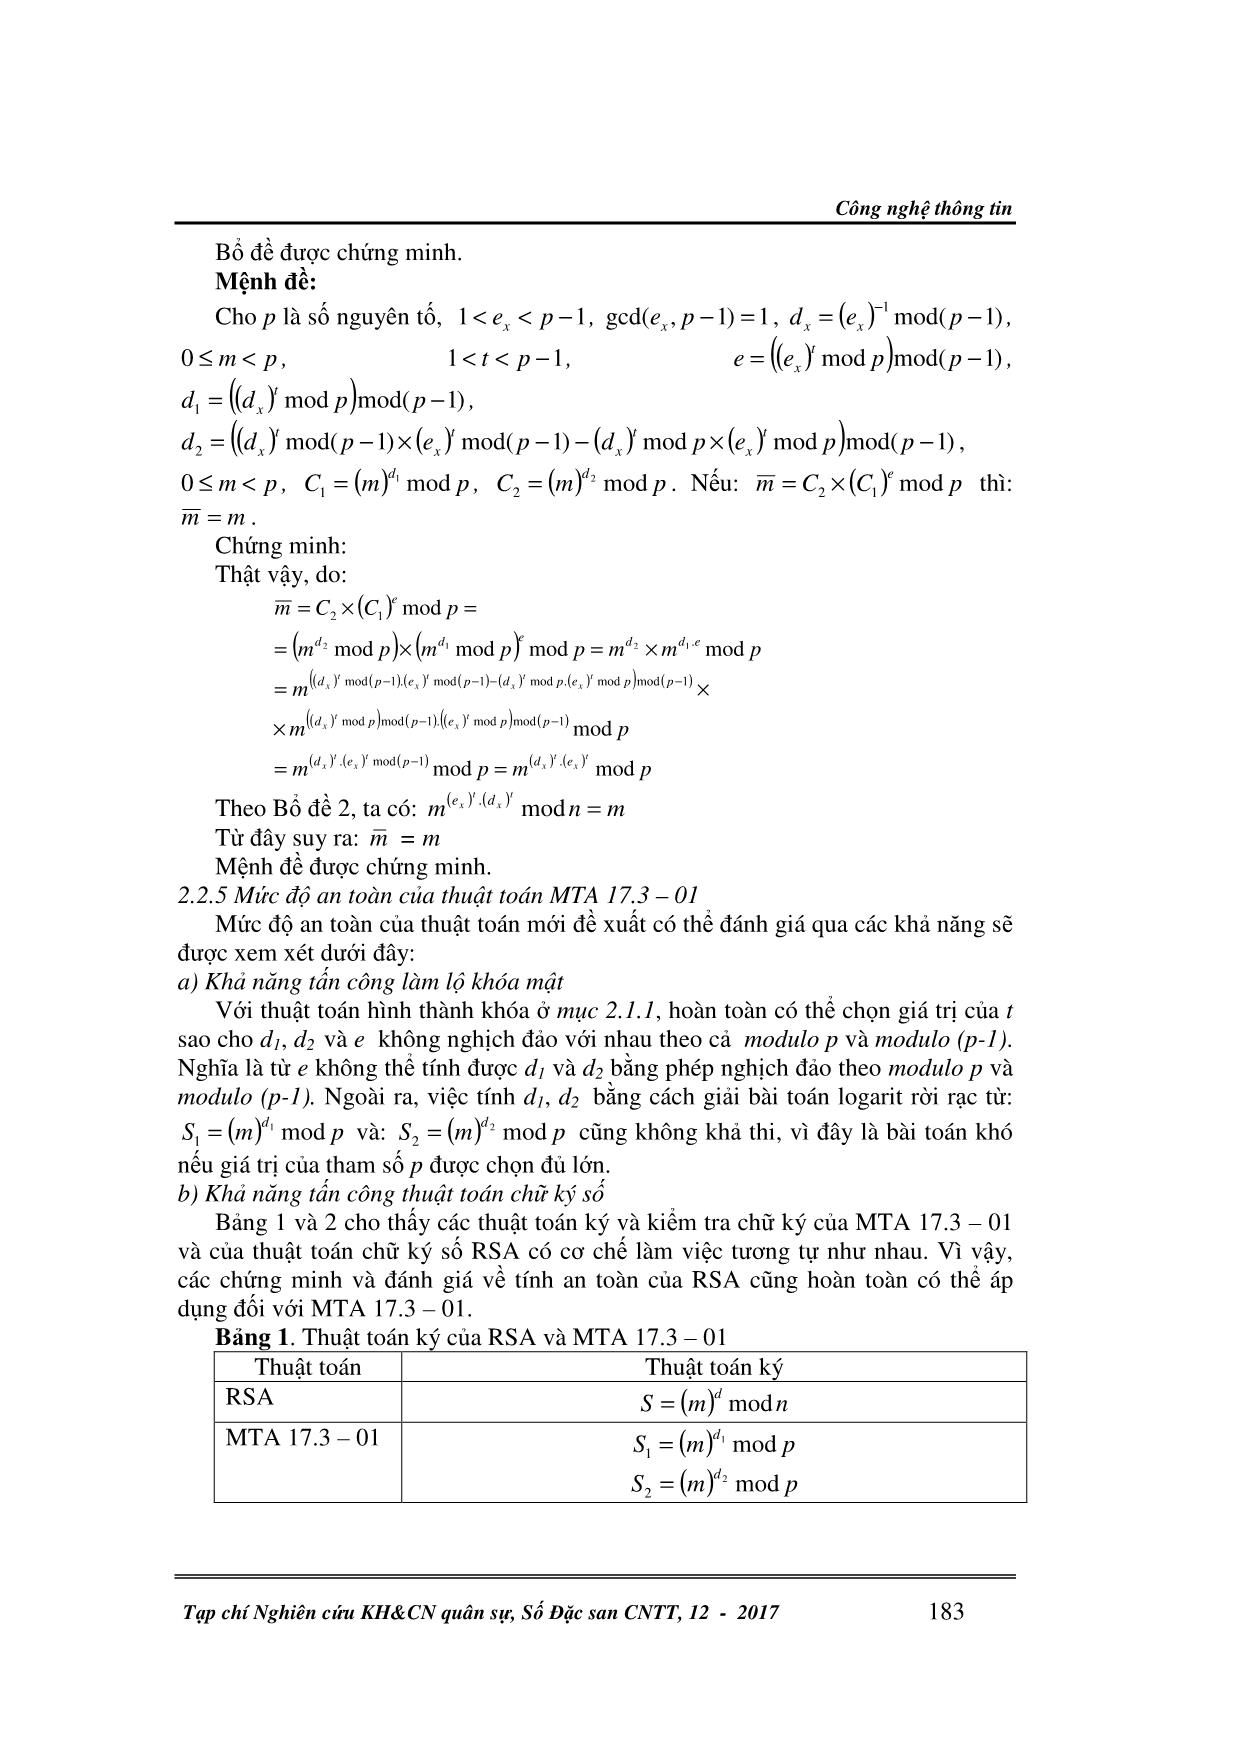 Phát triển thuật toán chữ ký số dựa trên hệ mã Poligh - Hellman trang 4